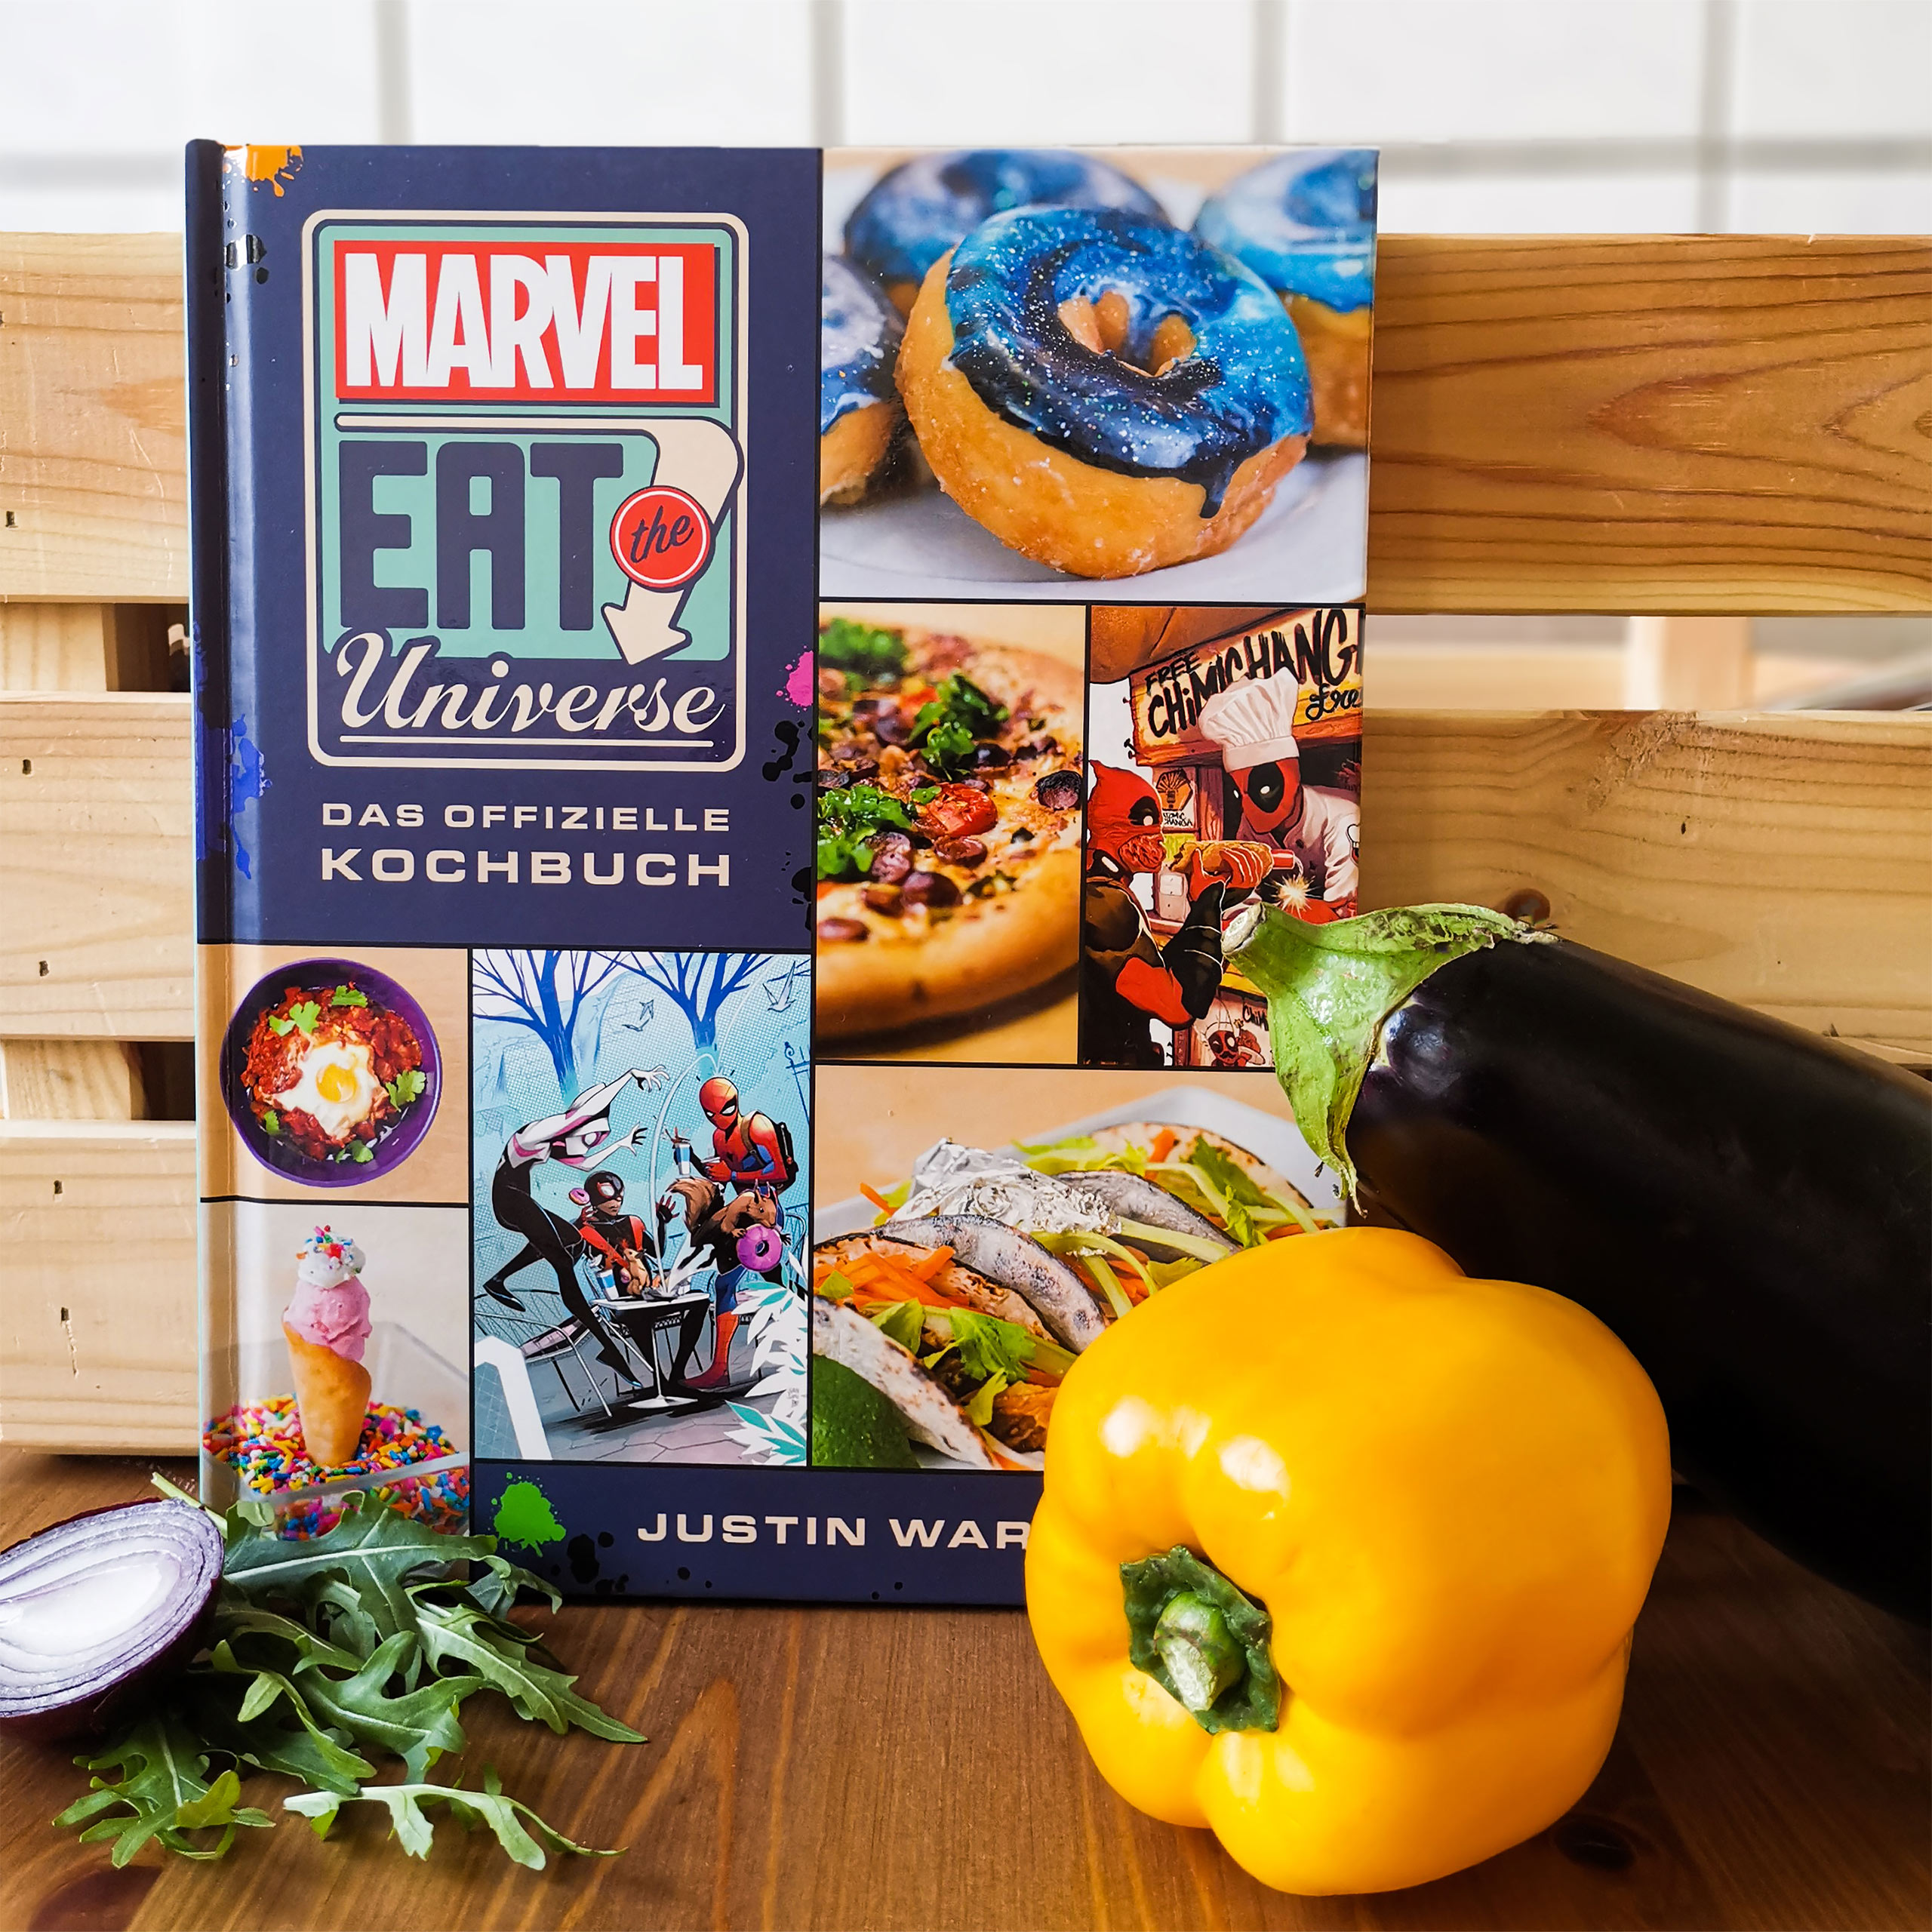 Marvel Eat the Universe - Le livre de cuisine officiel